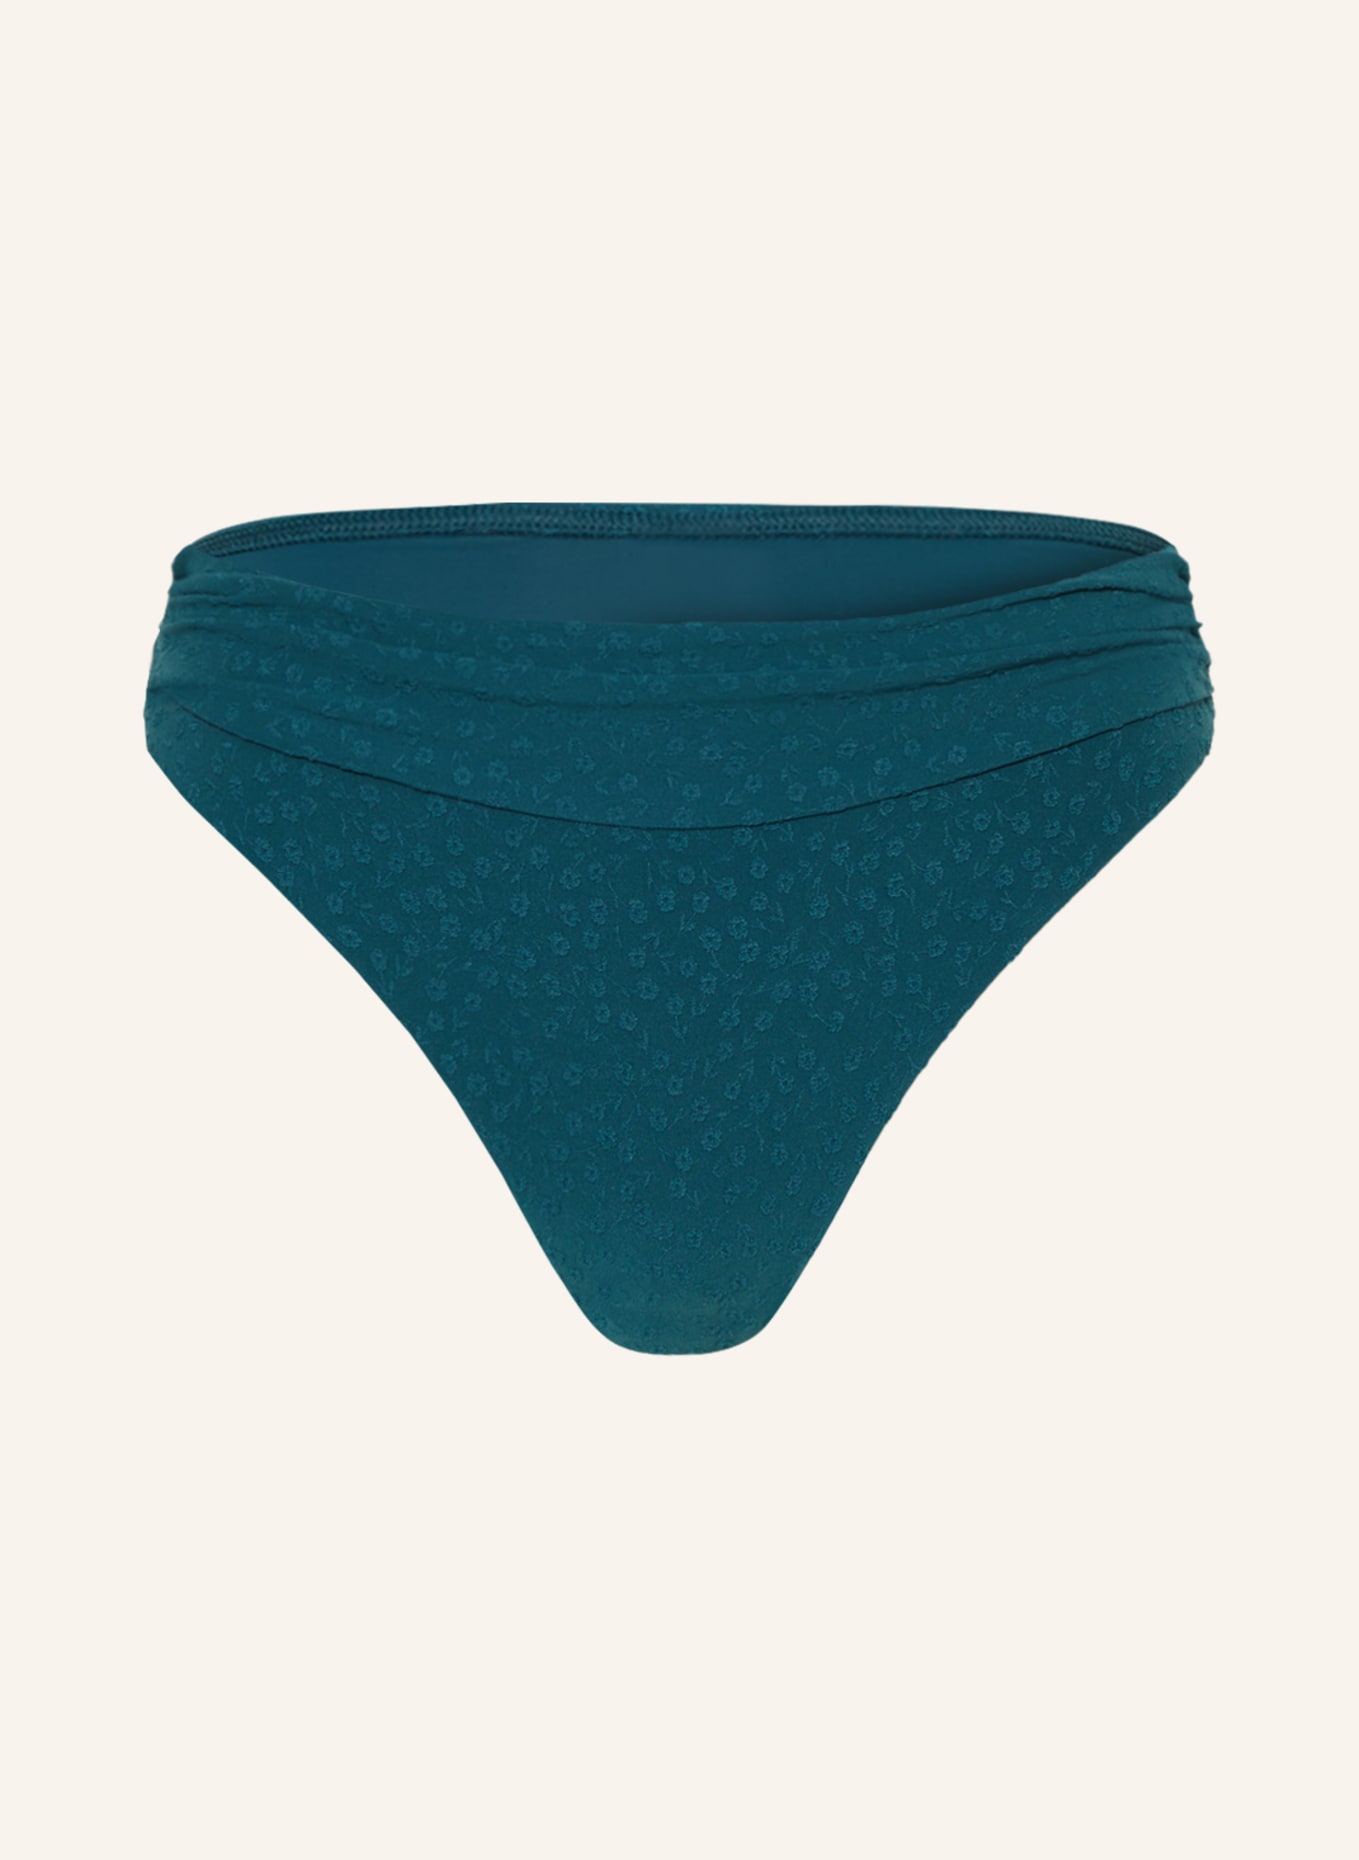 CYELL Basic bikini bottoms FLORA TEAL, Color: TEAL (Image 1)